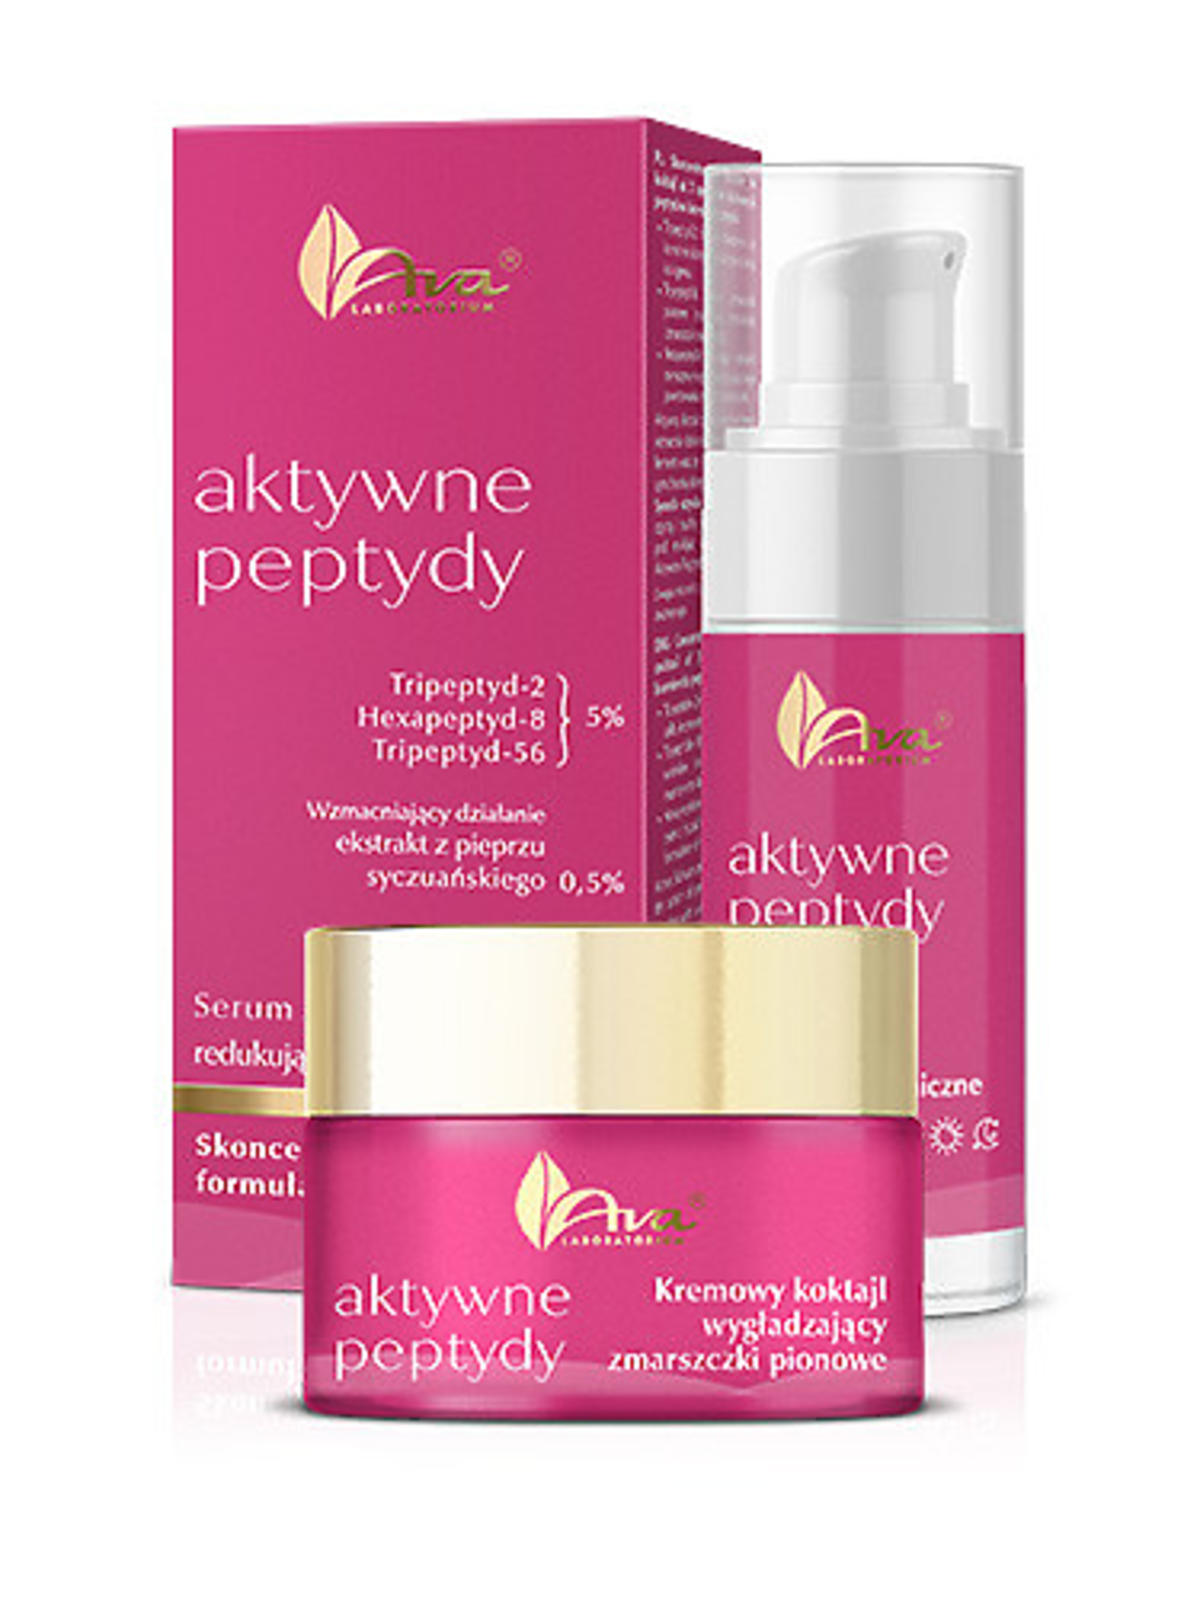 "Aktywne Peptydy" marki Laboratorium Kosmetyczne AVA